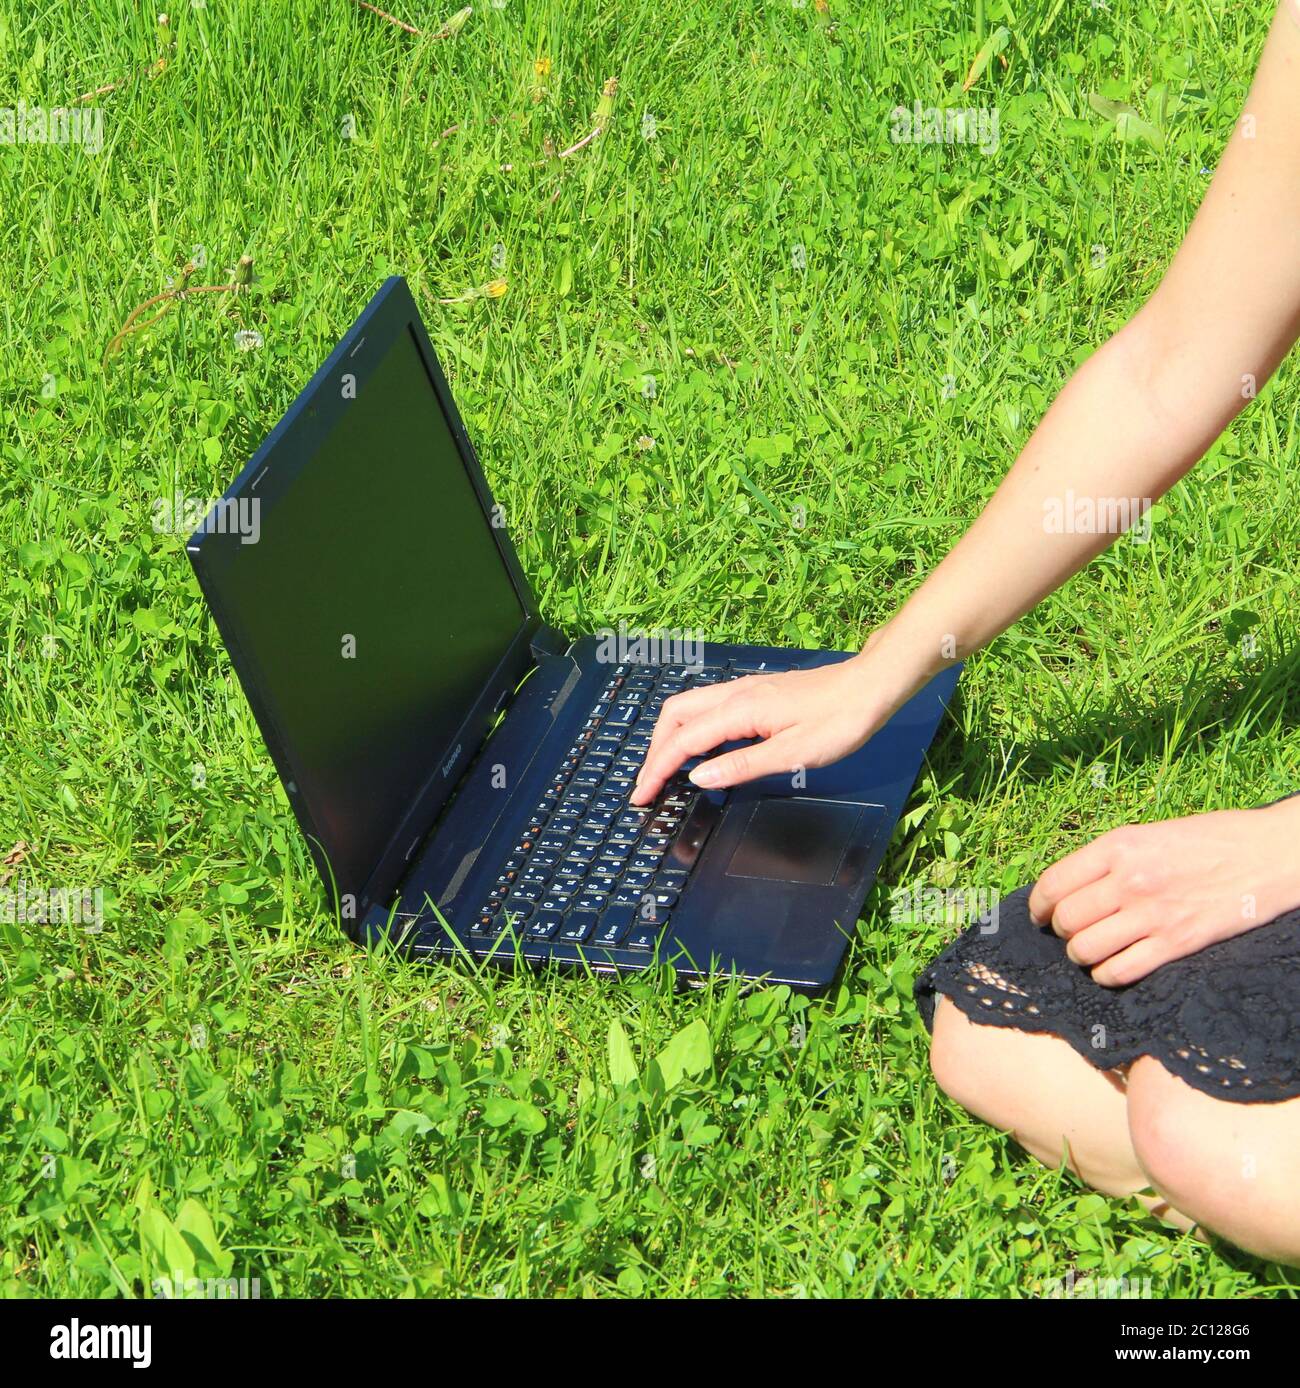 Der Laptop ist auf dem grünen Gras, das Mädchen arbeitet am Computer auf dem Rasen. Die Hand des Mannes ist auf der Tastatur. Stockfoto